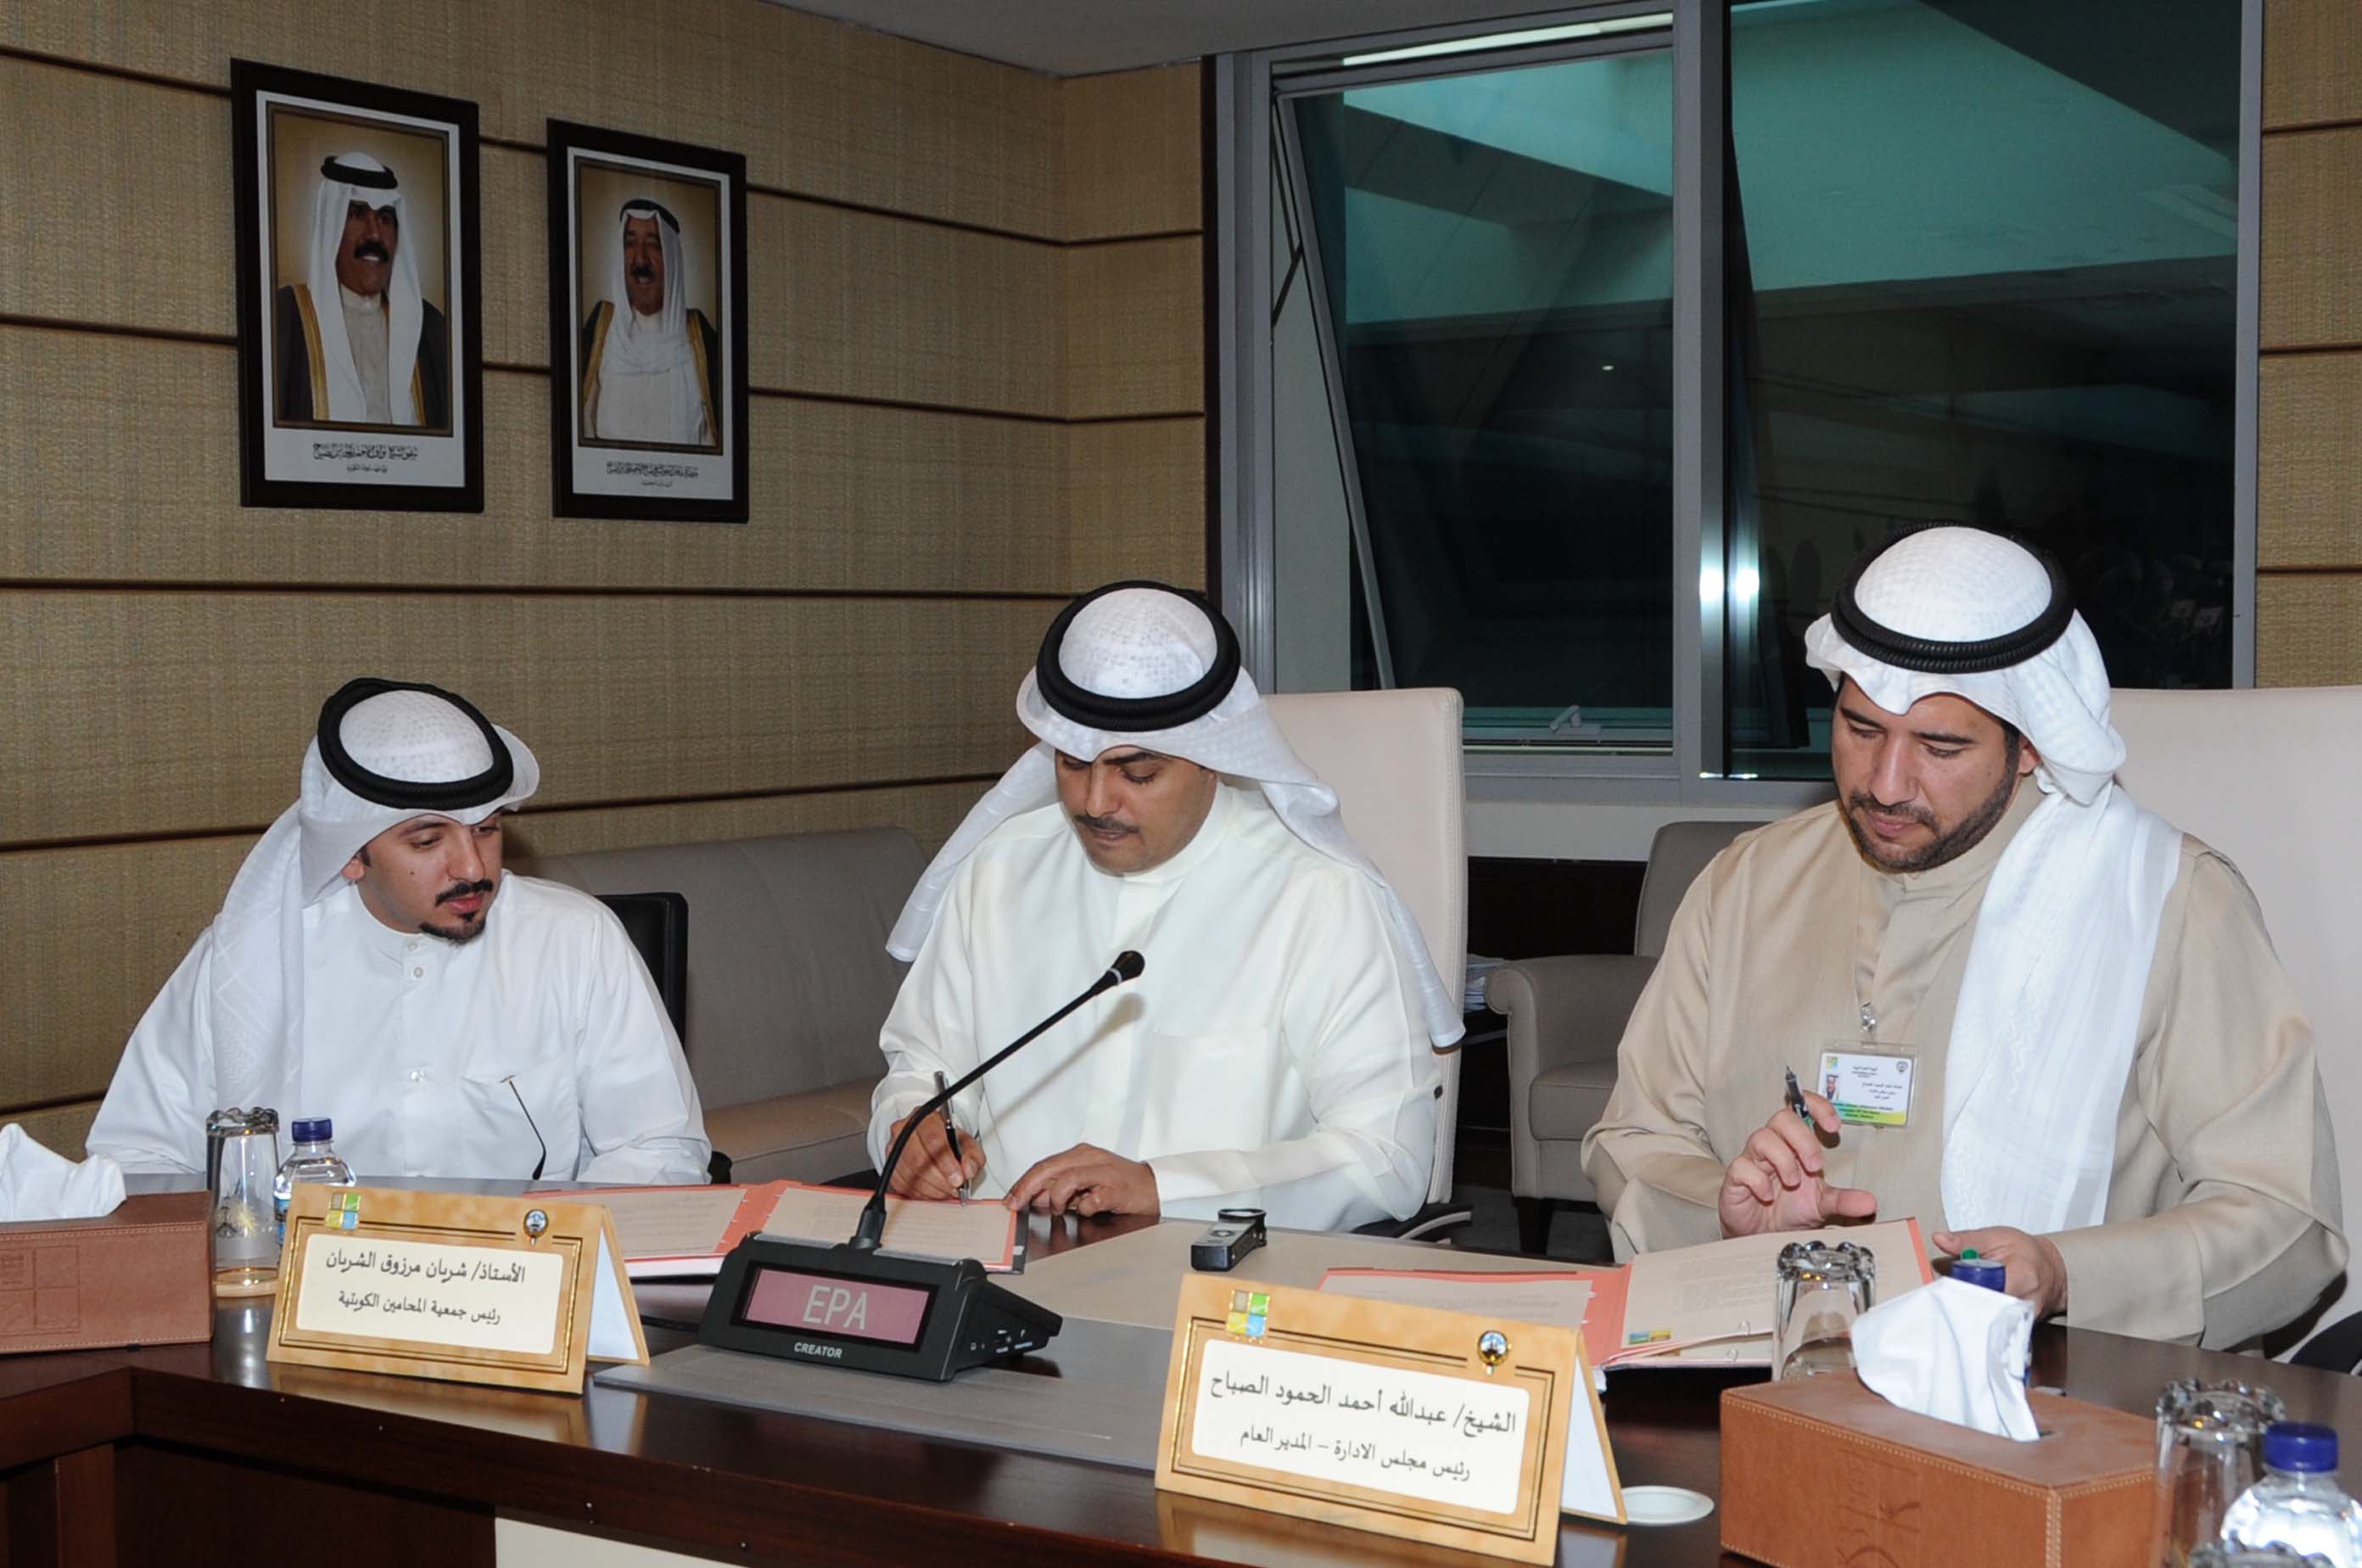 وقعت الهيئة العامة للبيئة الكويتية وجمعية المحامين الكويتية مذكرة تفاهم تشمل مجالات التوعية البيئية للقانونيين والتعريف بقانون حماية البيئة من خلال التدريب وتبادل الخبرات.